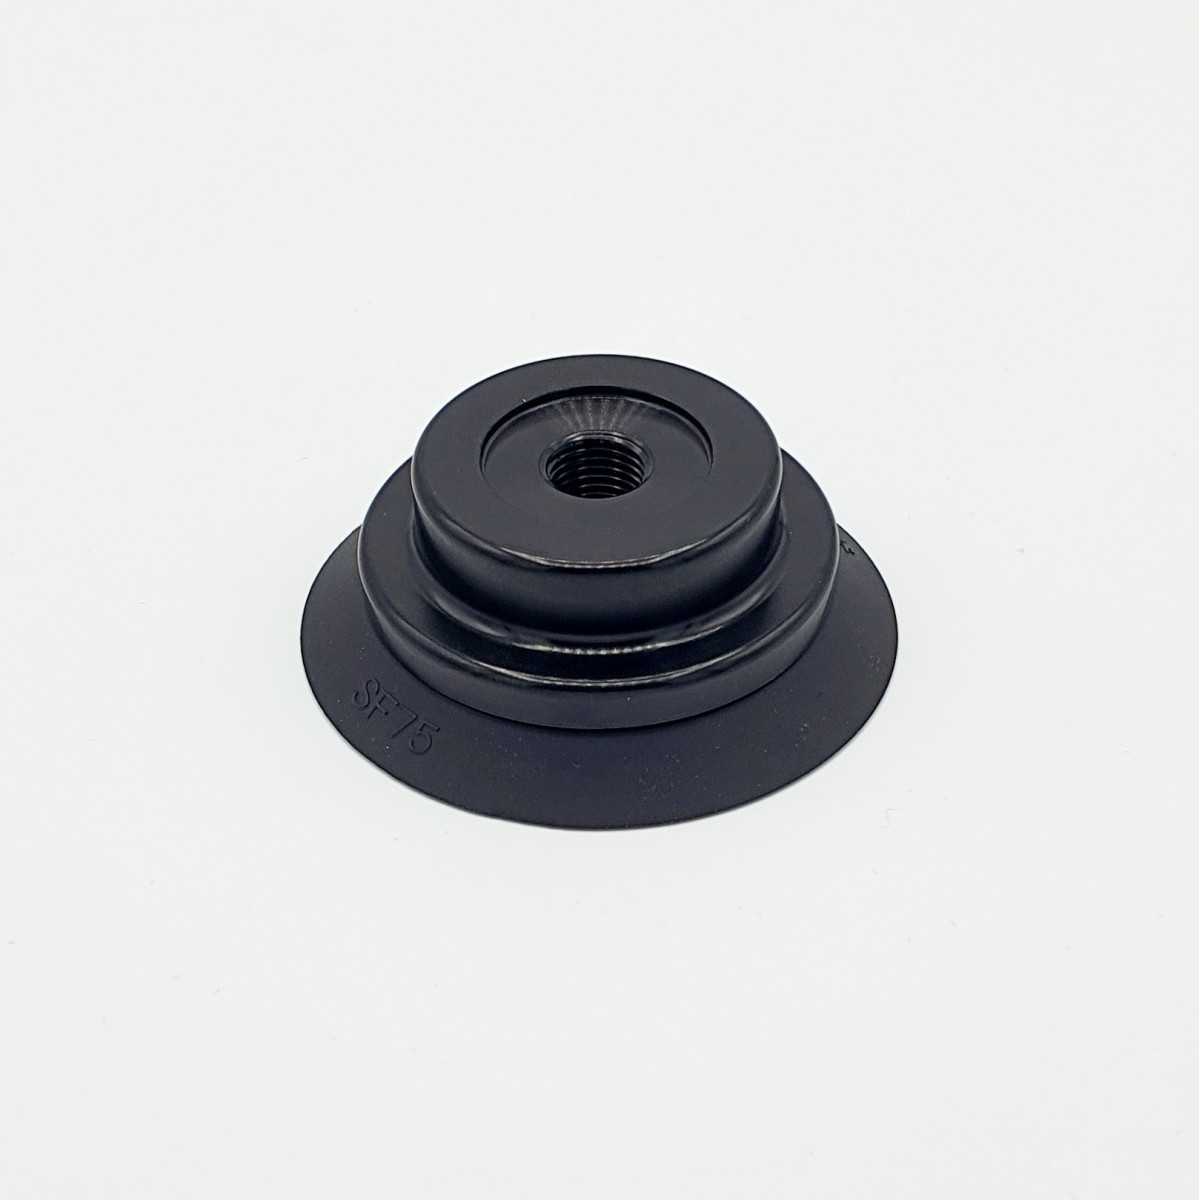 Flat suction cup D75 / NBR / m.S. / IG 1/4" | Beta Online Shop